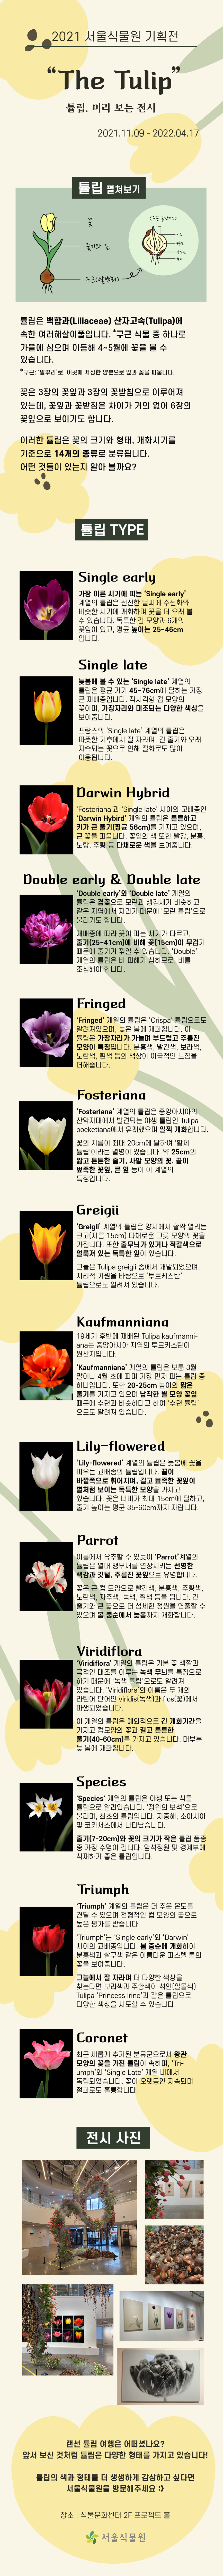 2021 서울식물원 기획전/ The Tulip/ 튤립, 미리 보는 전시/ 2021.11.09-2022.04.17/ 튤립 펼쳐보기/ 튤립 구조/ 상단-꽃/ 중단-줄기와 잎/ 하단-구근(알뿌리)/ 구근 상세 구조/ 구근 종단면/ 겉면-씨눈/ 내부-비늘잎/ 껍질-겉껍질/ 하단-뿌리/ 툴립은 백합과(Liliaceae) 산자고속(Tulipa)에 속한 여러해살이풀입니다./ 구근 식물 중 하나로 가을에 심으며 이듬해 4~5월에 꽃을 볼 수 있습니다./ 구근 : `알뿌리`로, 이곳에 저장한 양분으로 잎과 꽃을 피웁니다./ 꽃은 3장의 꽃잎과 3장의 꽃받침으로 이루어져 있는데, 꽃잎과 꽃받침은 차이가 거의 없어 6장의 꽃잎으로 보이기도 합니다./ 이러한 튤립의 꽃의 크기와 형태, 개화시기를 기준으로 14개의 종류로 분류됩니다. 어떤 것들이 있는 지 알아 볼까요?/ 튤립 TYPE/ Single ealry 사진/ Single early/ 가장 이른 시기에 피는 `Single ealry`계열의 튤립은 선선한 날씨에 수선화와 비슷한 시기에 개화하며 꽃을 더 오래 볼 수 있습니다. 독특한 컵 모양과 6개의 꽃잎이 있고, 평균 높이는 25~46cm 입니다./ Single late 사진/ Single late/ 늦봄에 볼 수 있는 `Single late` 계열의 튤립은 평균 키가 45~76cm에 달하는 가장 큰 재배종입니다. 직사각형 컵 모양의 꽃이며, 가장자리와 대조되는 다양한 색상을 보여줍니다./ 프랑스의 `Single late` 계열의 튤립은 따뜻한 기후에서 잘 자라며, 긴 줄기와 오래 지속되는 꽃으로 인해 절화로도 많이 이용됩니다./ Darwin Hybrid 사진/ Darwin Hybrid/ `Fosteriana`과 `Single late` 사이의 교배종인 `Darwin Hybrid` 계열의 튤립은 튼튼하고 키가 큰 줄기(평균 56cm)를 가지고 있으며, 큰 꽃을 피웁니다. 꽃잎의 색 또한 빨강, 분홍, 노랑, 조황 등 다채로운 색을 보여줍니다./ Double early & Double late 사진/ Double early & Double late/ `Double early`와 `Double late` 계열의 튤립은 겹꽃으로 모란과 생김새가 비슷하고 같은 지역에서 자라기 때문에 `모란 튤립`으로 불리기도 합니다. 재배종에 따라 꽃이 피는 시기가 다르고 줄기(25~41cm)에 비해 꽃(15cm)이 무겁기 때문에 줄기가 꺾일 수 있습니다. `Double`계열의 튤립은 비 피해가 심하므로, 비를 조심해야 합니다./ Fringed 사진/ Fringed/ `Fringed`계열의 튤립은 `Crispa`튤립으로도 알려져있으며, 늦은 봄에 개화합니다. 이 튤립은 가장자리가 가늘며 부드럽고 주름진 모양이 특징입니다. 분홍색, 빨간색, 보라색, 노란색, 흰색 등의 색상이 이국적인 느낌을 더해줍니다./ Fosteriana 사진/ Fosteriana/ `Fosteriana`계열의 튤립은 중앙아시아의 산악지대에서 발견되는 야생 튤립인 Tulipa pocketiana에서 유래했으며, 일찍 개화합니다. 꽃의 지름이 최대 20cm에 달하여 `황제 튤립`이라는 별명이 있습니다. 약 25cm의 짧고 튼튼한 줄기, 사발 모양의 꽃, 끝이 뾰족한 꽃잎, 큰 잎 등이 이 계열의 특징입니다./ Greigii 사진/ Greigii/ `Greigii`계열의 튤립은 양지에서 활짝 열리는 크고(지름 15cm) 다채로운 그릇 모양의 꽃을 가집니다. 또한 줄무늬가 있거나 적살색으로 얼룩져 있는 독특한 잎이 있습니다. 그들은 Tulipa greigii 종에서 개발되었으며, 지리적 기원을 바탕으로 `투르케스탄` 튤립으로도 알려져 있습니다./ Kaufmanniana 사진/ Kaufmanniana/ 19세기 후반에 재배된 Tulipa kaufmanni-ana는 중앙아시아 지역의 투르키스탄이 원산지입니다. `Kaufmanniana`계열의 튤립은 보통 3월 말이나 4월 초에 피며 가장 먼저 피는 튤립 중 하나입니다. 또한 20-25cm 높이의 짧은 줄기를 가지고 있으며 납작한 별 모양 꽃잎 때문에 수련과 비슷하다고 하여 `수련 튤립`으로도 알려져 있습니다./ Liliy-flowered/ `Liliy-flowered` 계열의 튤립은 늦봄에 꽃을 피우는 교배종의 튤립입니다. 끝이 바깥쪽으로 휘어지며, 길고 뾰족한 꽃잎이 별처럼 보이는 독특한 모양을 가지고 있습니다. 꽃의 너비가 최대 15cm에 달하고, 줄기 높이는 평균 35-60cm까지 자랍니다./ Parrot 사진/ Parrot/ 이름에서 유추할 수 있듯이 `Parrot`계열의 튤립은 열대 앵무새를 연상시키는 선명한 색감과 깃털, 주름진 꽃잎으로 유명합니다. 꽃은 큰 컵 모양으로 빨간색, 분홍색, 주황색, 노란색, 자주색, 녹색, 흰색 등을 띕니다. 긴 줄기와 큰 꽃으로 더 섬세한 정원을 연출할 수 있으며 봄 중순에서 늦봄까지 개화합니다./ Viridiflora 사진/ Viridiflora/ `Viridiflora`계열의 튤립은 기본 꽃 색깔과 극적인 대조를 이루는 녹색 무늬를 특징으로 하기 때문에 `녹색 튤립`으로도 알려져 있습니다. `Viridiflora`의 이름은 두 개의 라틴어 단어인 viridis(녹색)과 flos(꽃)에서 파생되었습니다. 이 계열의 튤립은 예외적으로 긴 개화기간을 가지고 컵모양의 꽃과 길고 튼튼한 줄기(40-60cm)를 가지고 있습니다. 대부분 늦 봄에 개화합니다./ Species 사진/ Species/ `Species`계열의 튤립은 야생 또는 식물 튤립으로 알려있습니다. `정원의 보석`으로 불리며, 최초의 튤립입니다. 지중해, 소아시아 및 코카서스에서 나타났습니다. 줄기(7-20cm)와 꽃의 크기가 작은 튤립 품종 중 가장 수명이 깁니다. 암석정원 및 경계부에 식재하기 좋은 튤립입니다./ Triumph 사진/ Triumph/ `Triumph`계열의 튤립은 더 추운 온도를 견딜 수 있으며 전형적인 컵 모양의 꽃으로 높은 평가를 받습니다. `Triumph`는 `Single early`와 `Darwin`사이의 교배종입니다. 봄 중순에 개화하여 분홍색과 살구색 같은 아름다운 파스텔 톤의 꽃을 보여줍니다. 그늘에서 잘 자라며 더 다양한 색상을 찾는다면 보라색과 주황색이 섞인(밀목색) Tulipa `Princess Irine`과 같은 튤립으로 다양한 색상을 시도할 수 있습니다./ Coronet 사진/ Coronet/ 최근 새롭게 추가된 분류군으로서 왕관 모양의 꽃을 가진 튤립이 속하며, `Triumph`와 `Single Late`계열 내에서 독립되었습니다. 꽃이 오랫동안 지속되며 절화로도 유명합니다./ 전시 사진/ 기획 전시 전경1/ 기획 전시 전경2/ 기획 전시 전경3/ 기획 전시 전경4/ 기획 전시 전경5/ 기획 전시 전경6/ 랜선 튤립 여행은 어떠셨나요? 앞서 보신 것처럼 튤립은 다양한 형태를 가지고 있습니다!/ 튤립의 색과 형태를 더 생생하게 감사하고 싶다면 서울식물원을 방문해주세요(웃음)/ 장소 : 식물문화센터 2F 프로젝트 홀/ 서울식물원